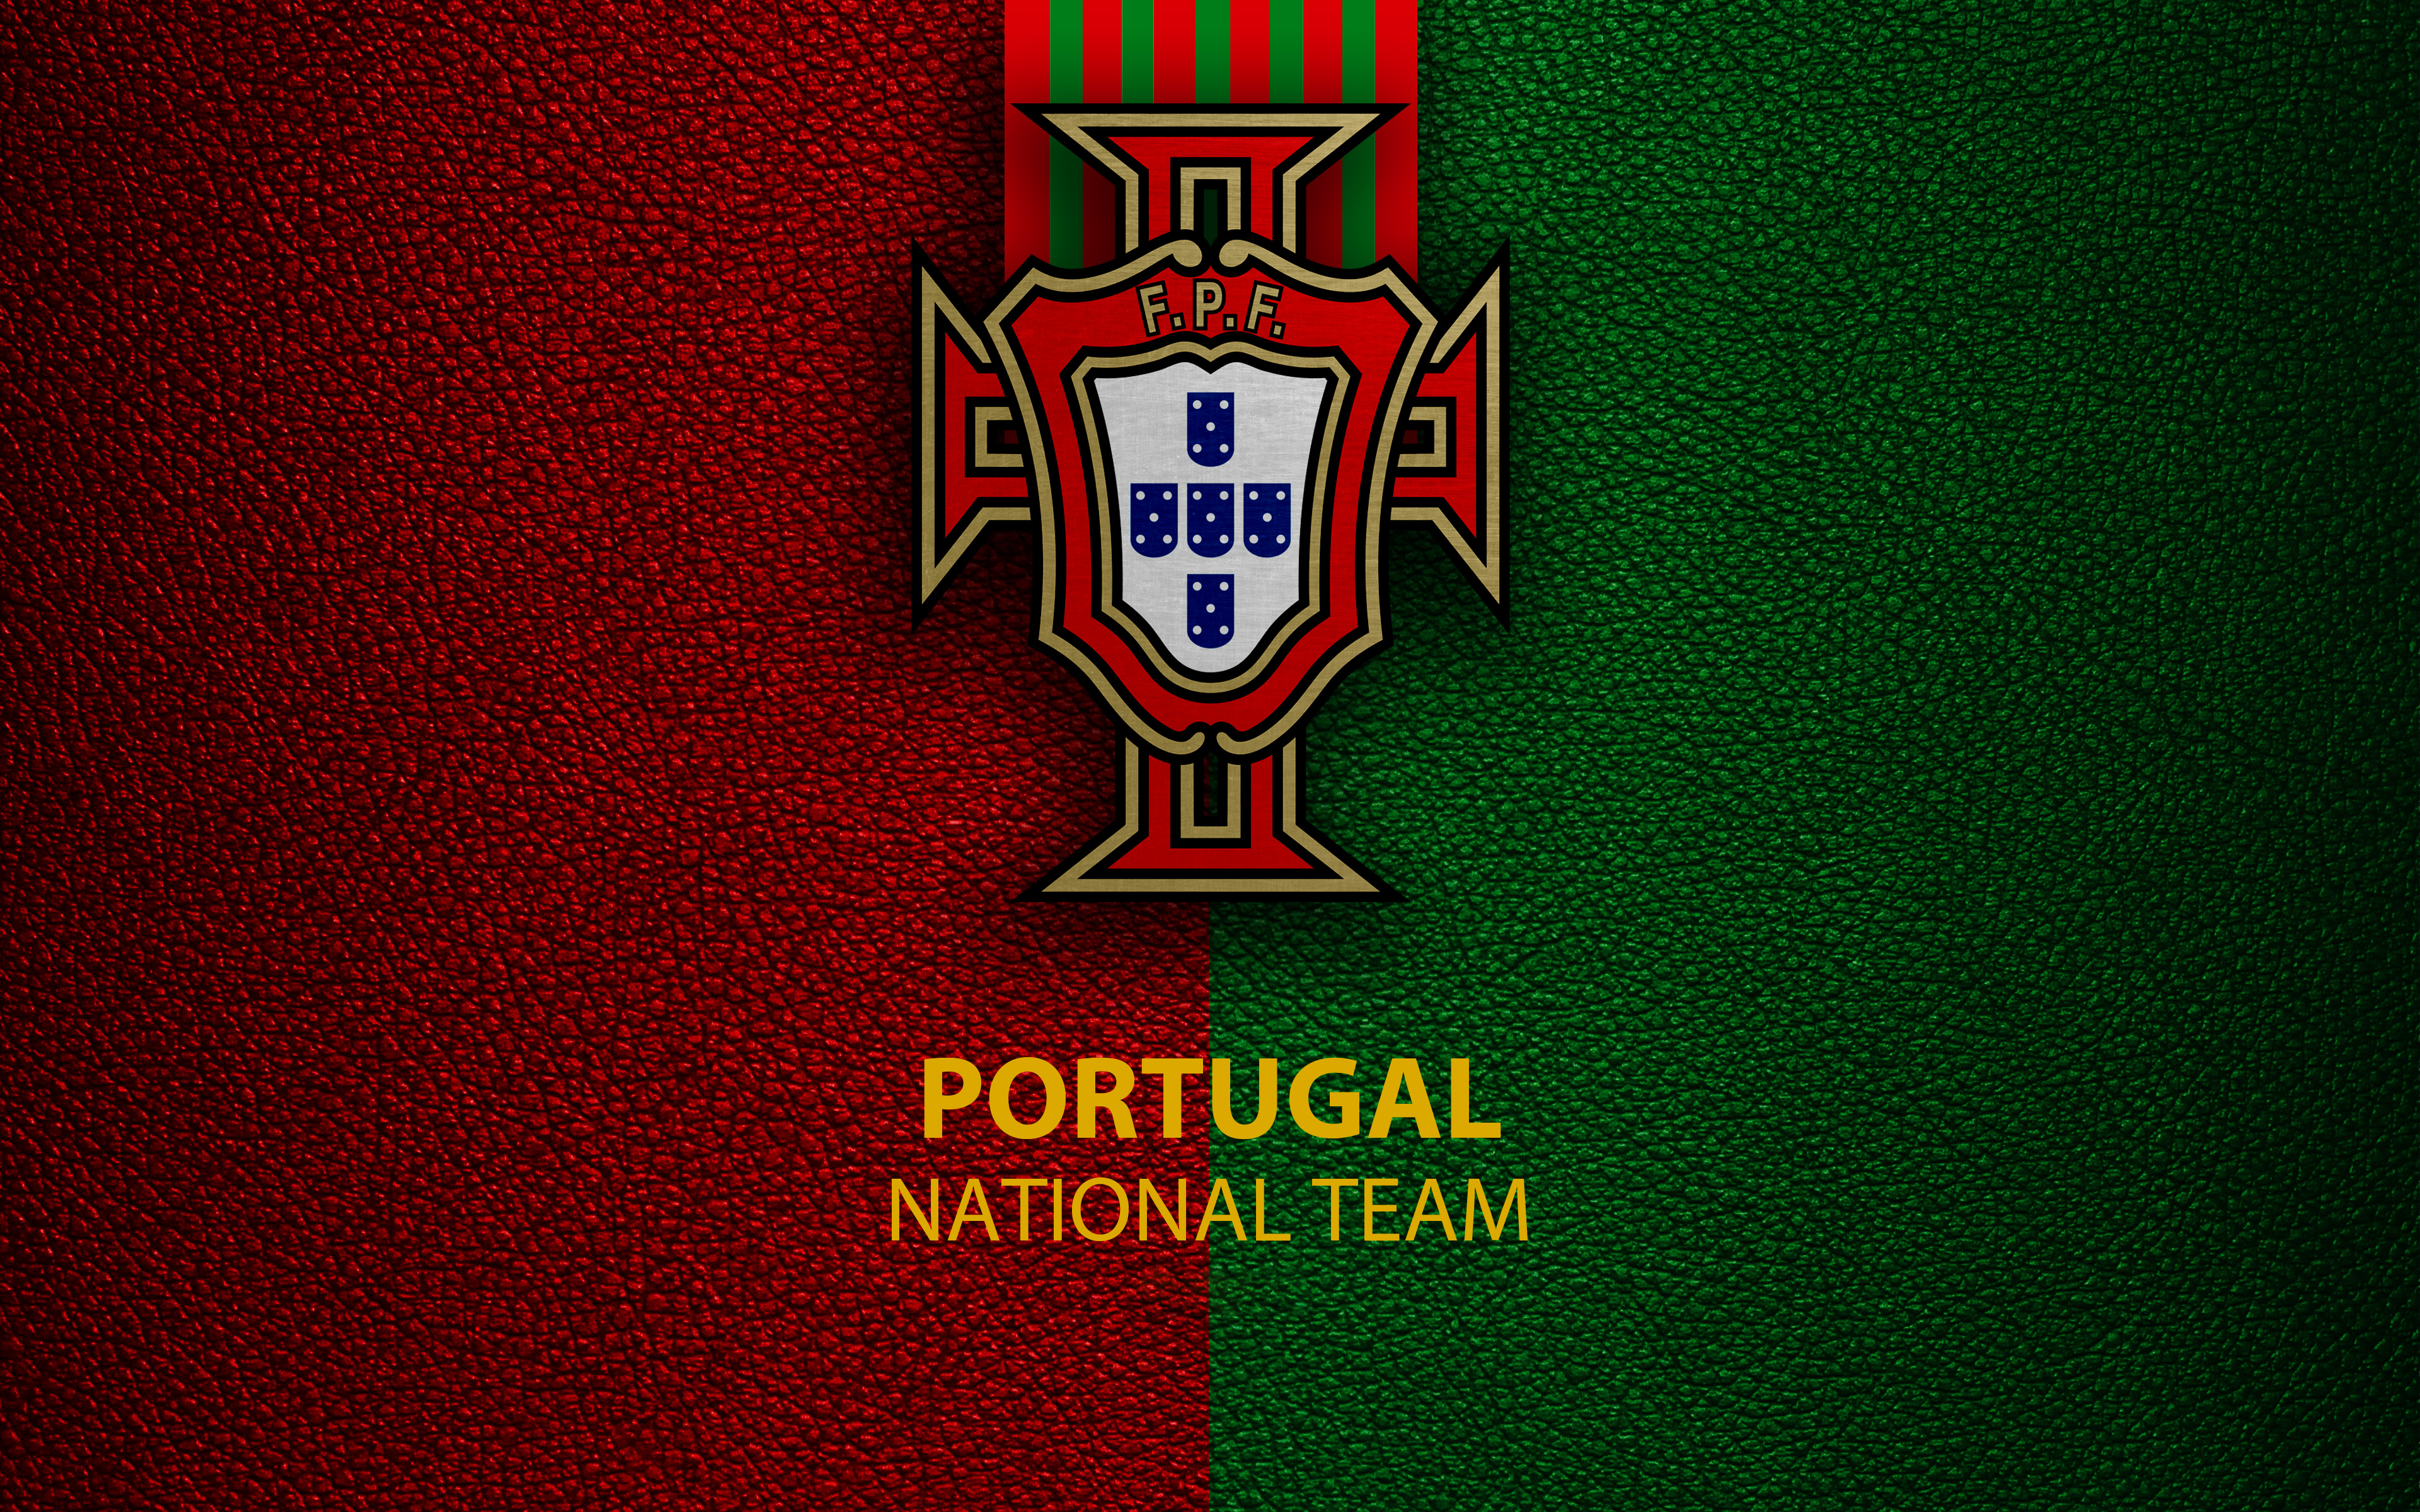 Cuál es el escudo de portugal